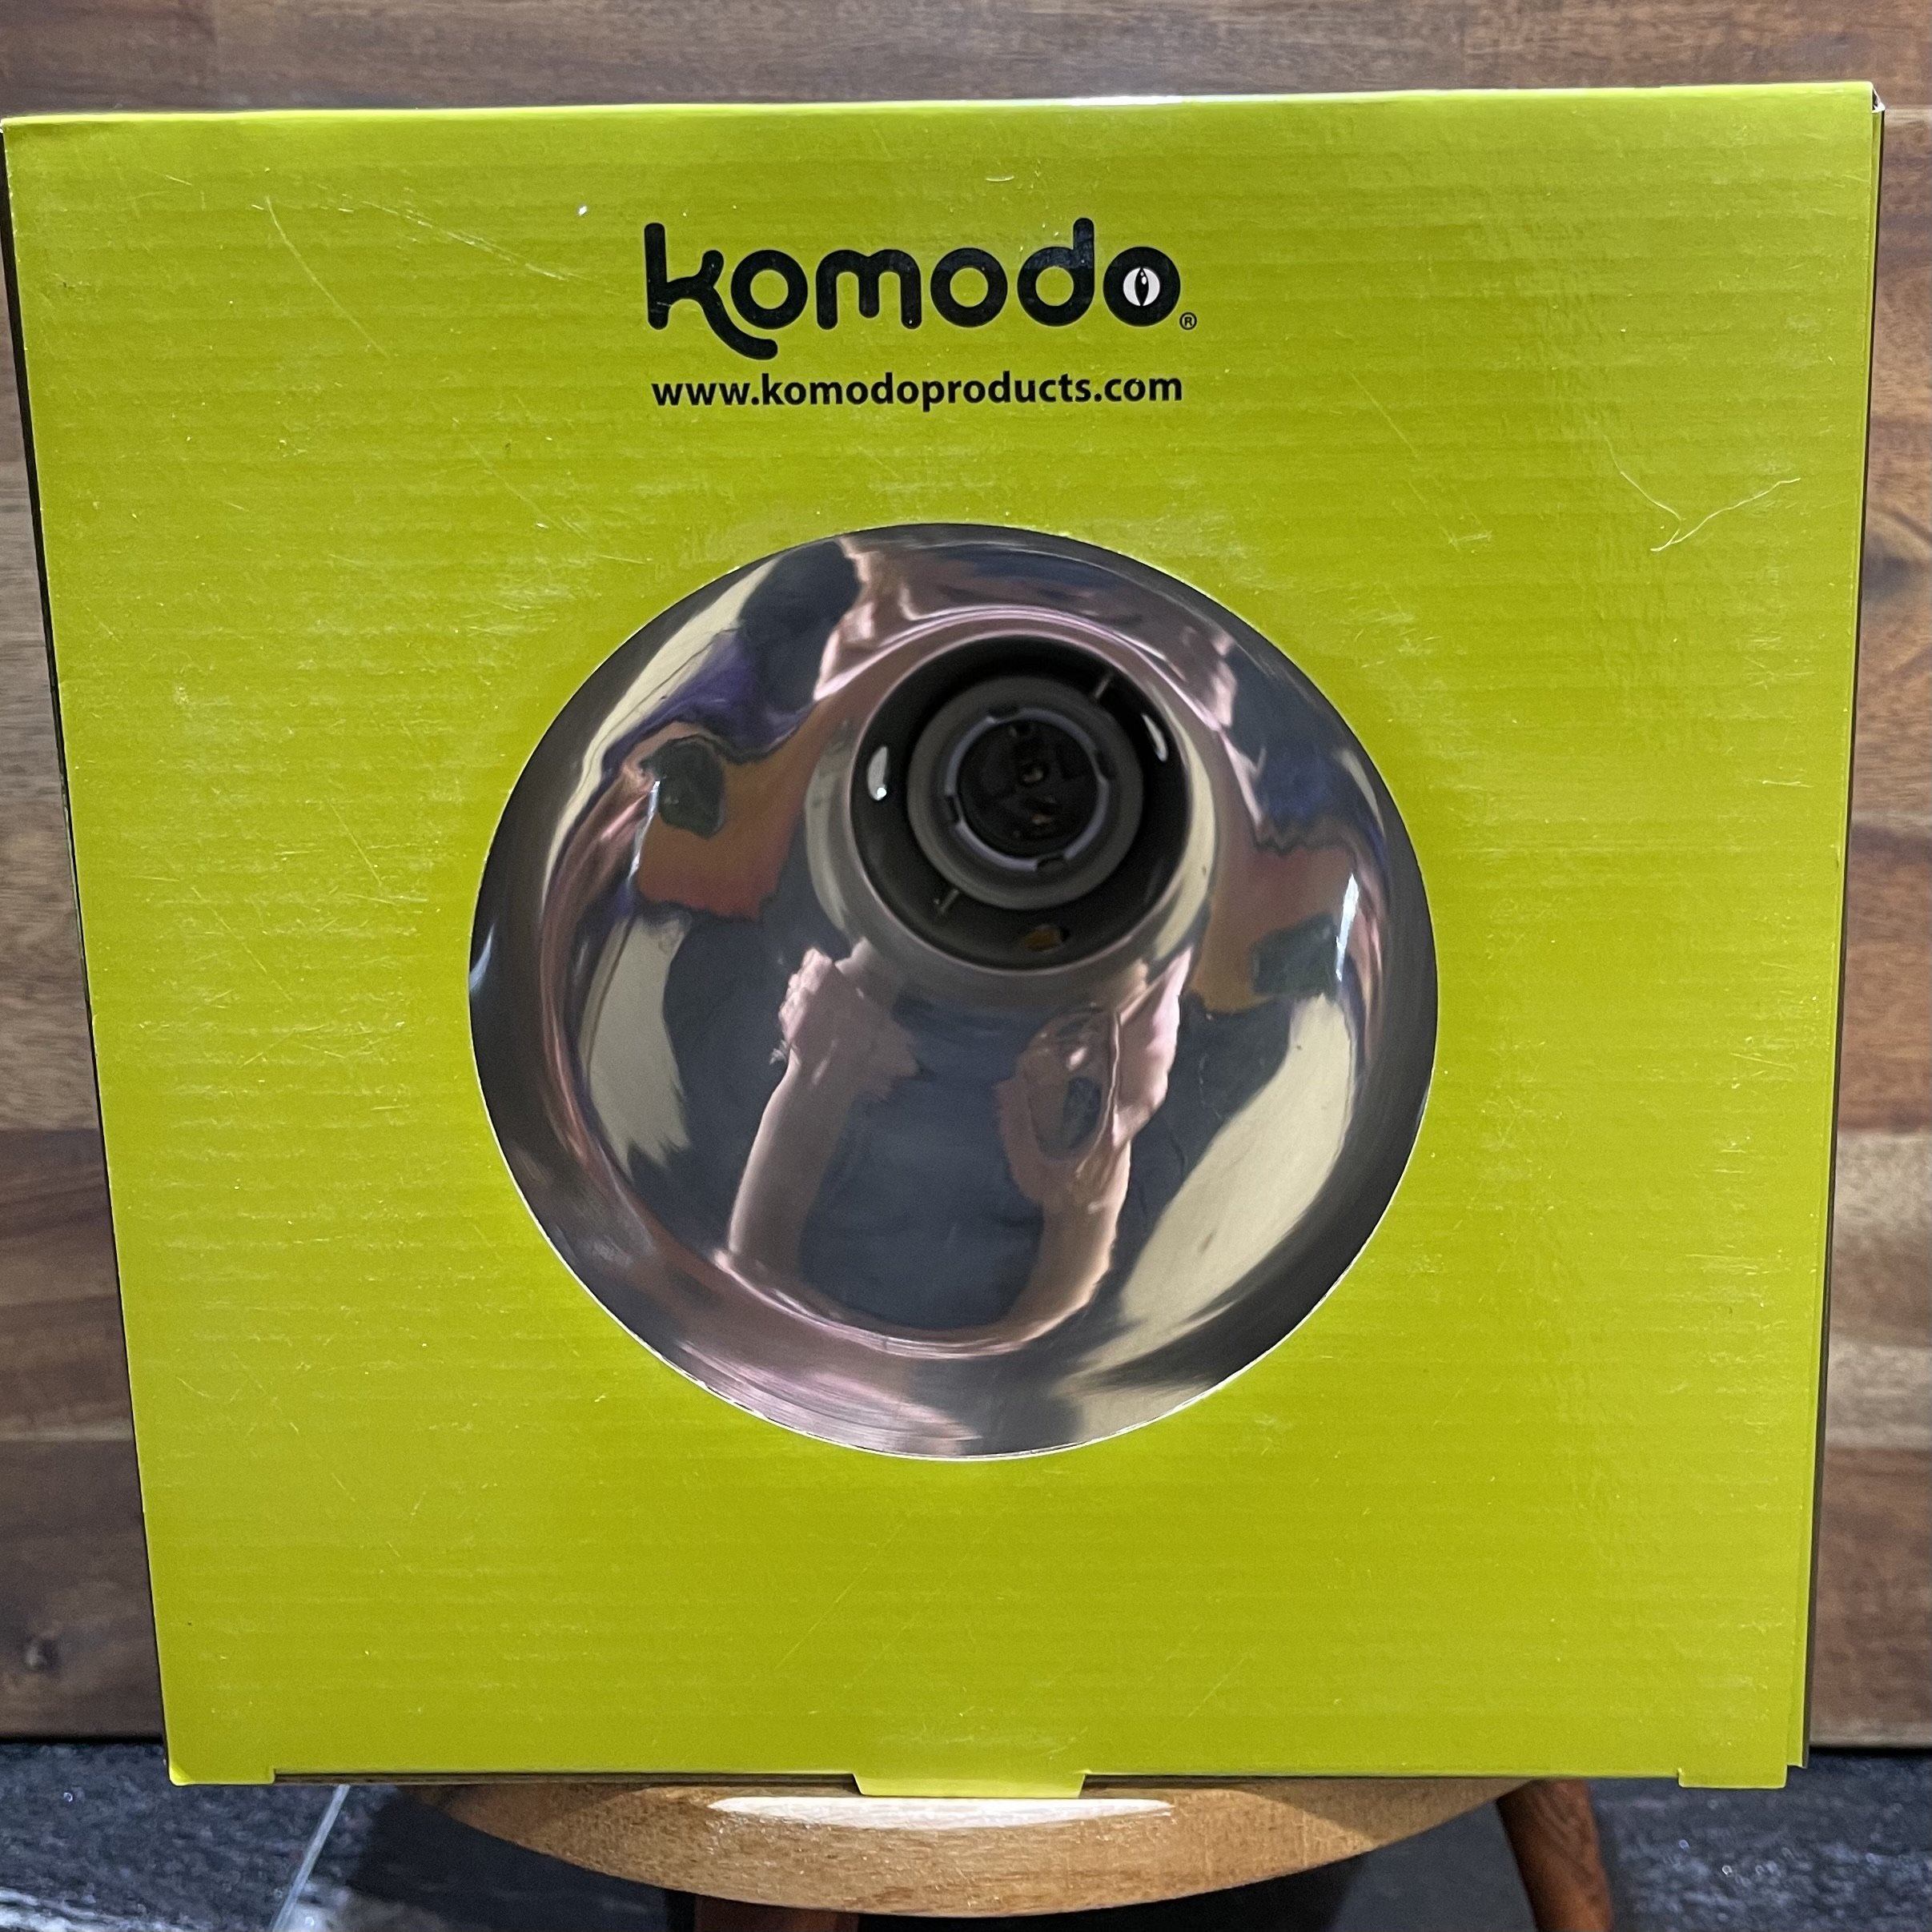 Komodo Light & Heat Komodo Deep Reflector Dome 200W (22x21x21cm)